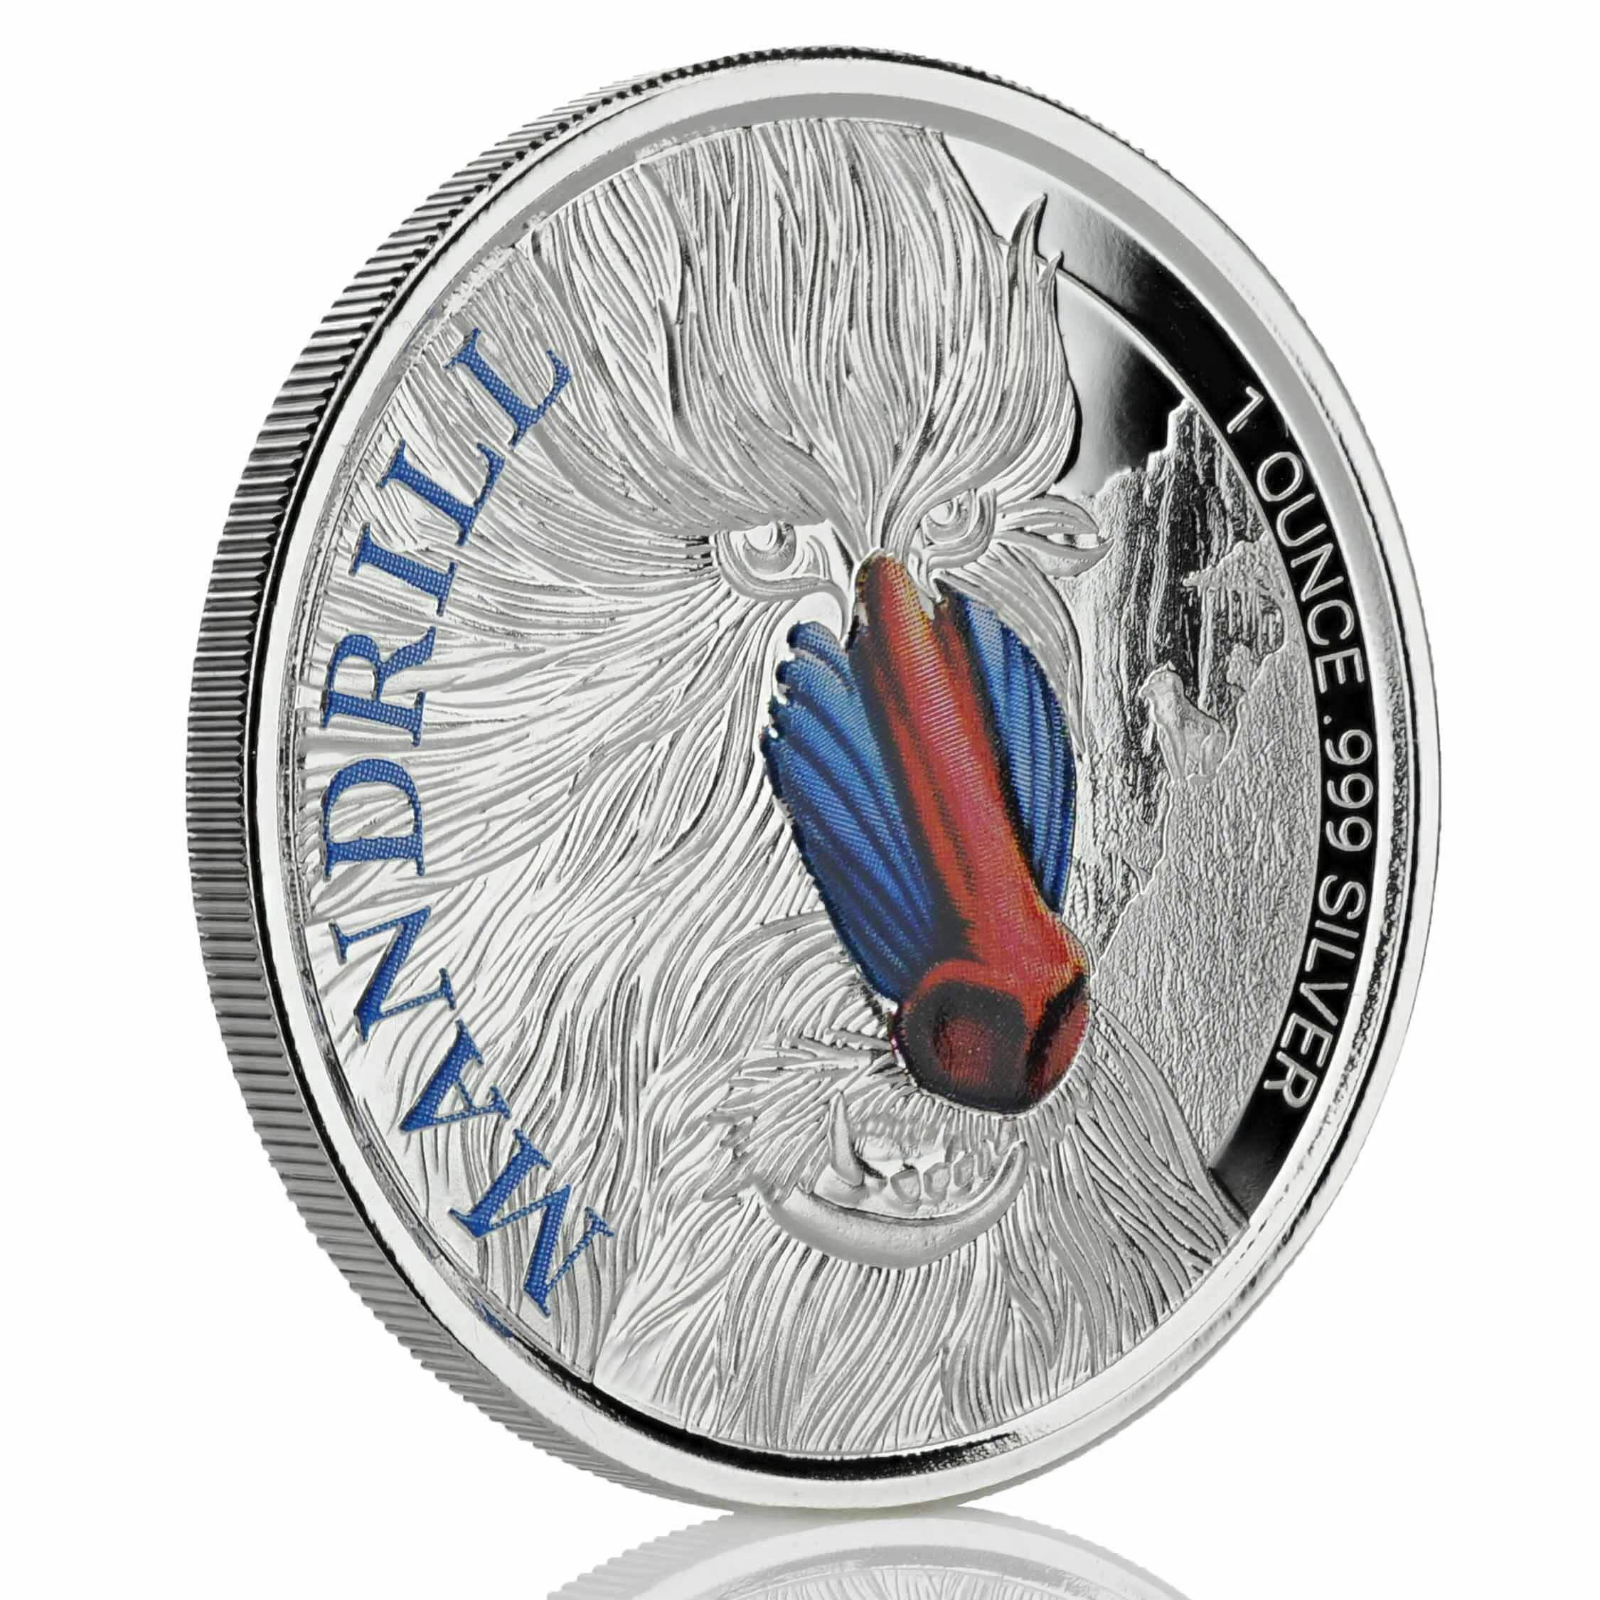 1 Oz Silver Coin 2020 500 CFA Francs Cameroon Scottsdale Mint Color - Mandrill-classypw.com-1